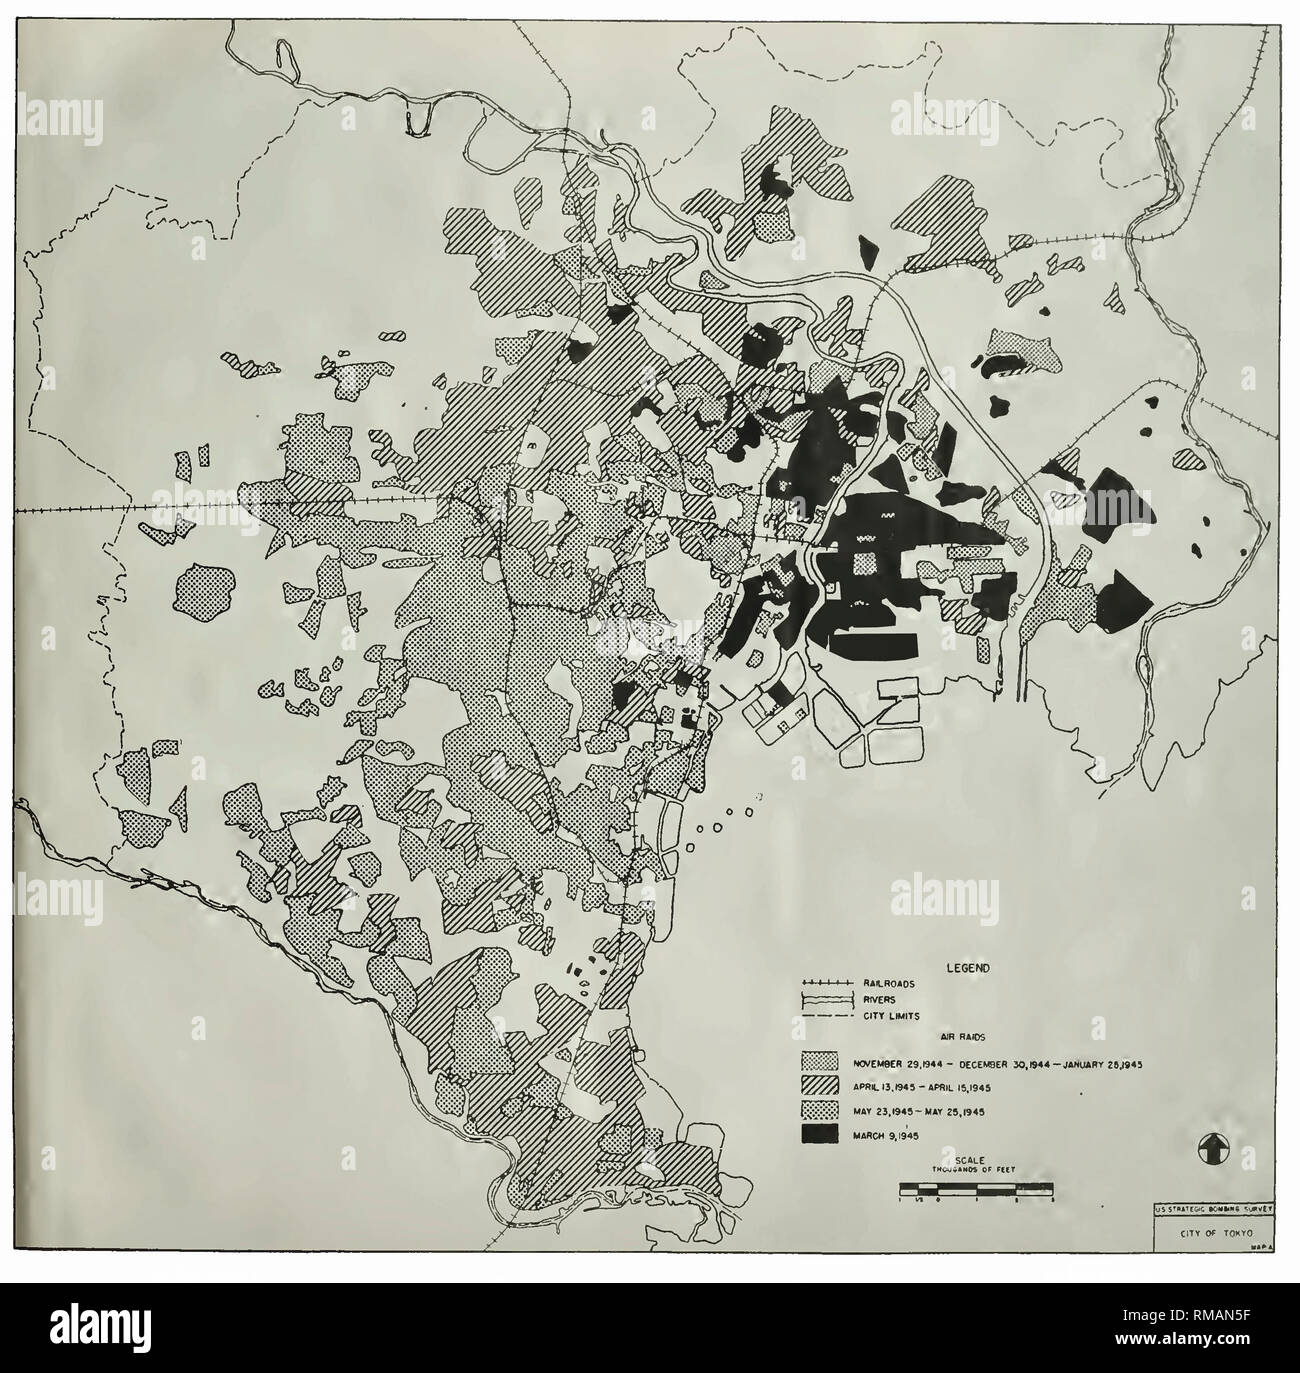 Mappa degli Stati Uniti strategica campagna di bombardamenti su Tokyo dal Novembre 29, 1944 - 25 maggio 1945. Effetti di attacco aereo sul complesso urbano Tokyo-Kawasaki-Yokohama. Foto Stock